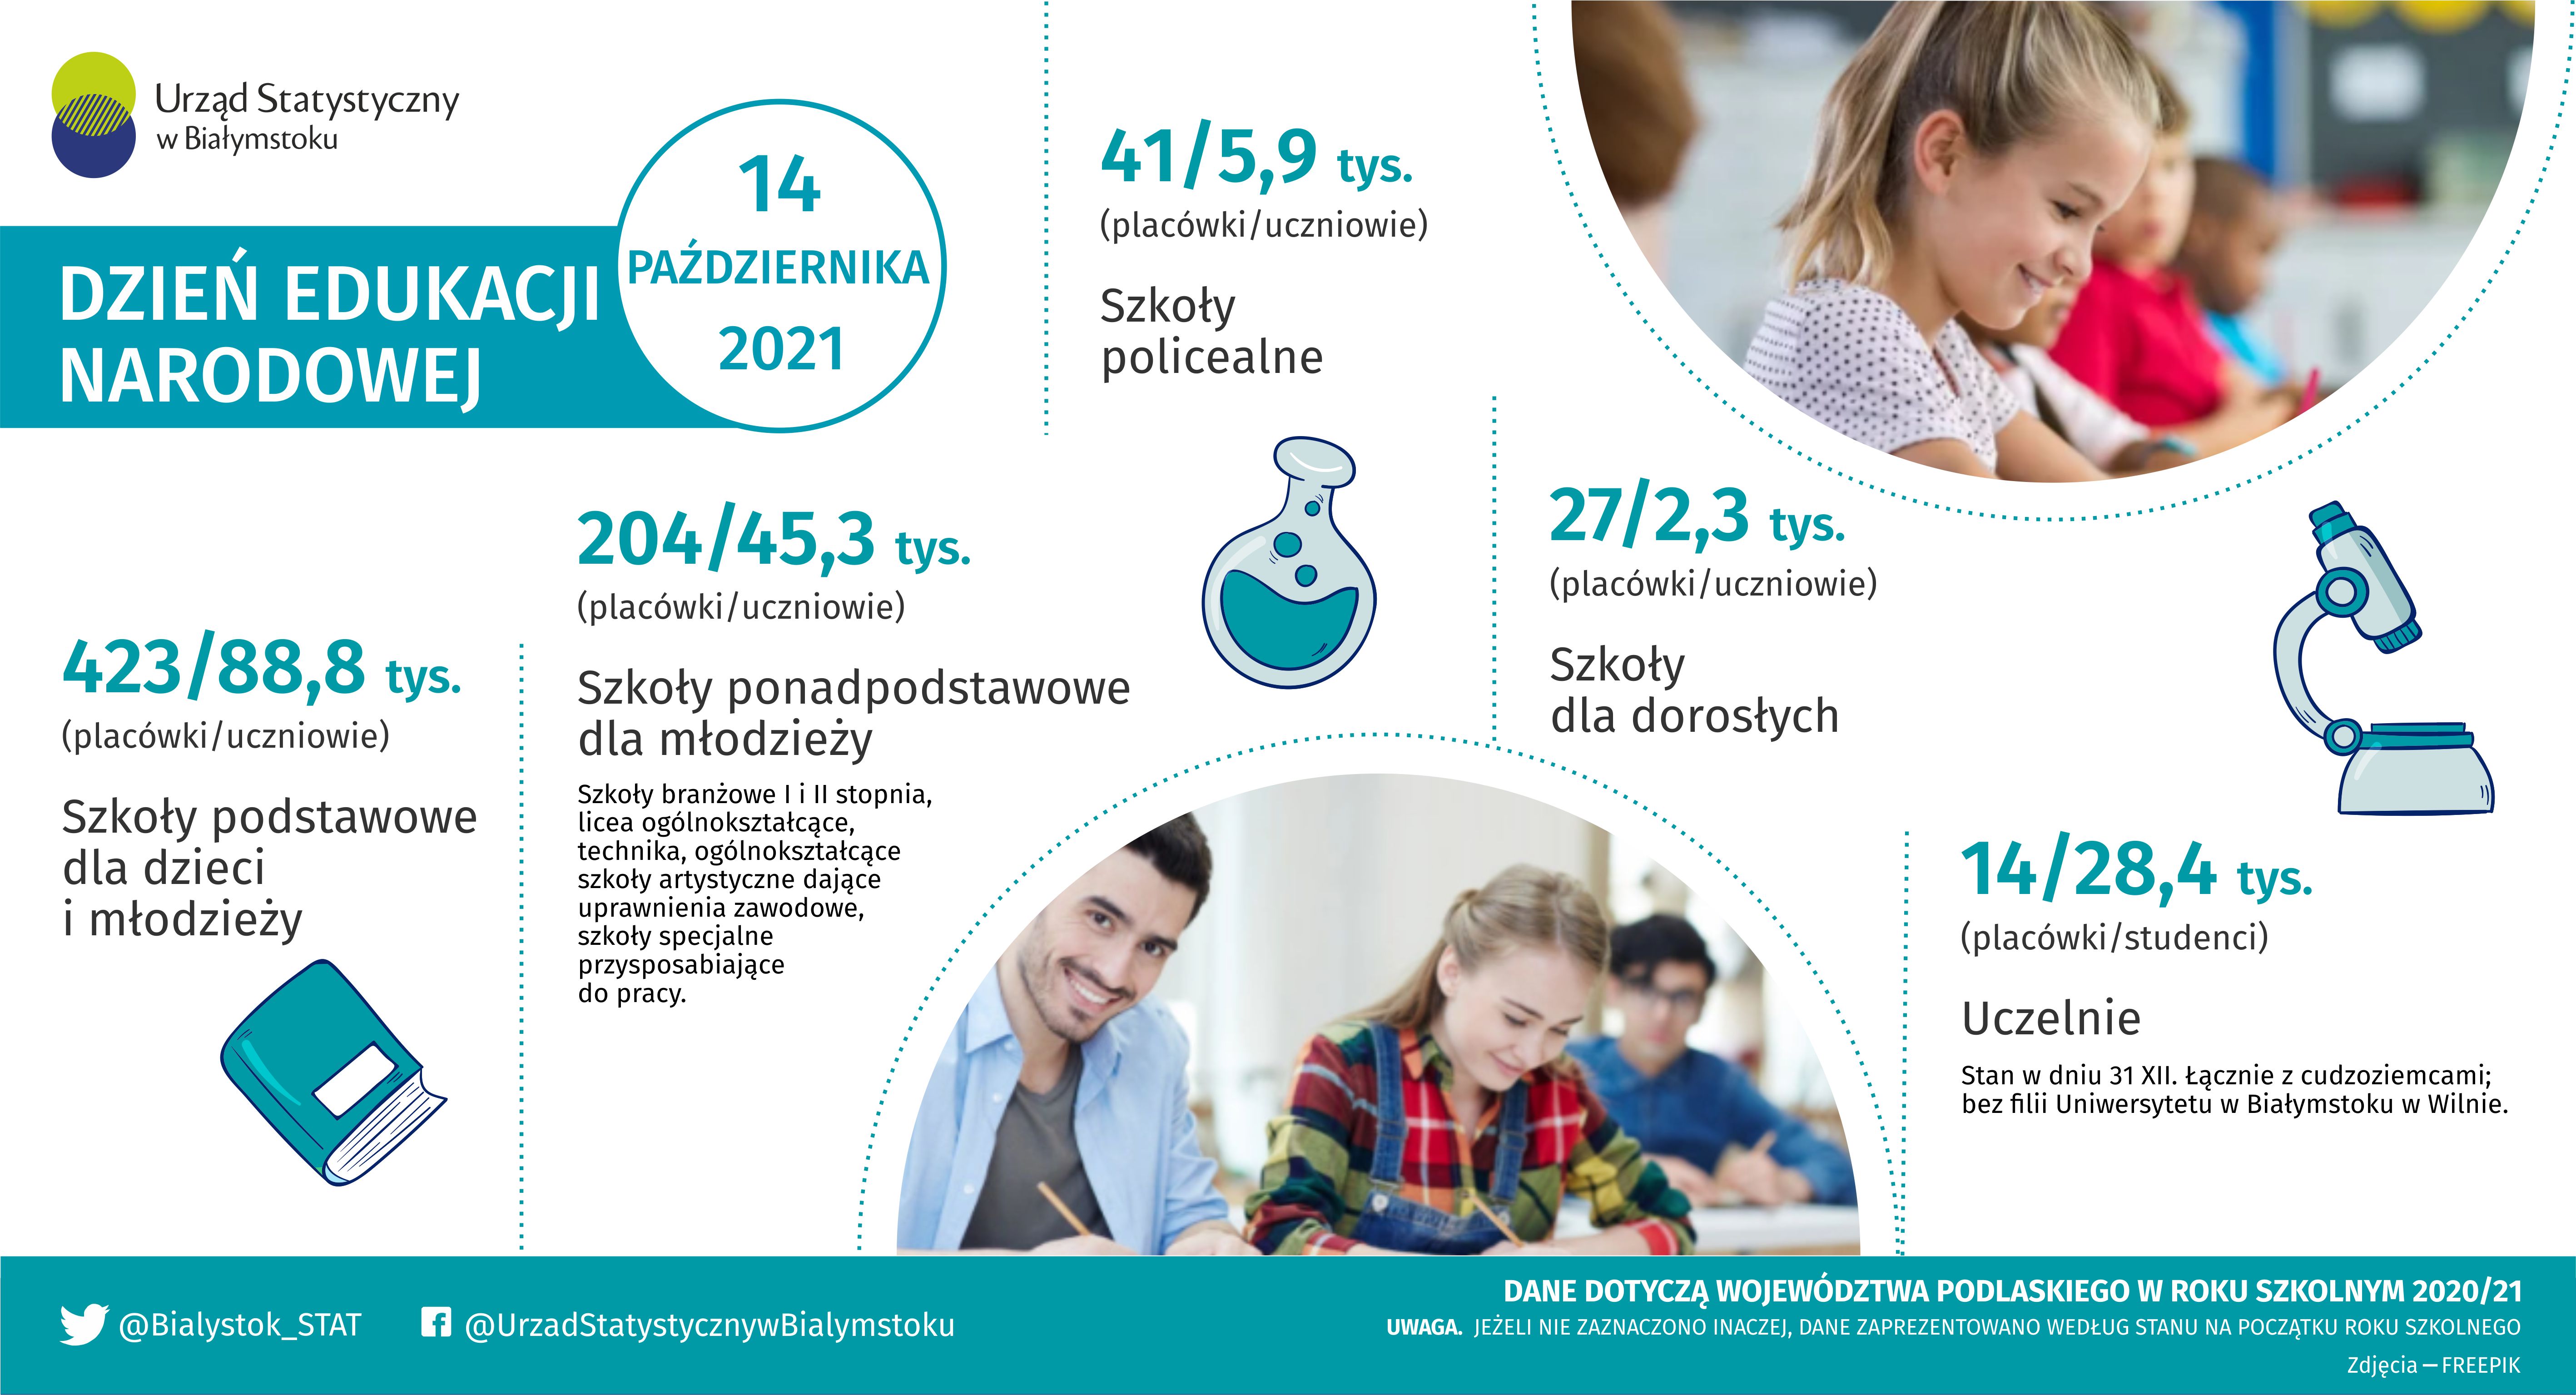 Infografika - Dzień Edukacji Narodowej - 14 października przedstawia dane dotyczące szkół podstawowych, ponadpodstawowych i dla dorosłych 